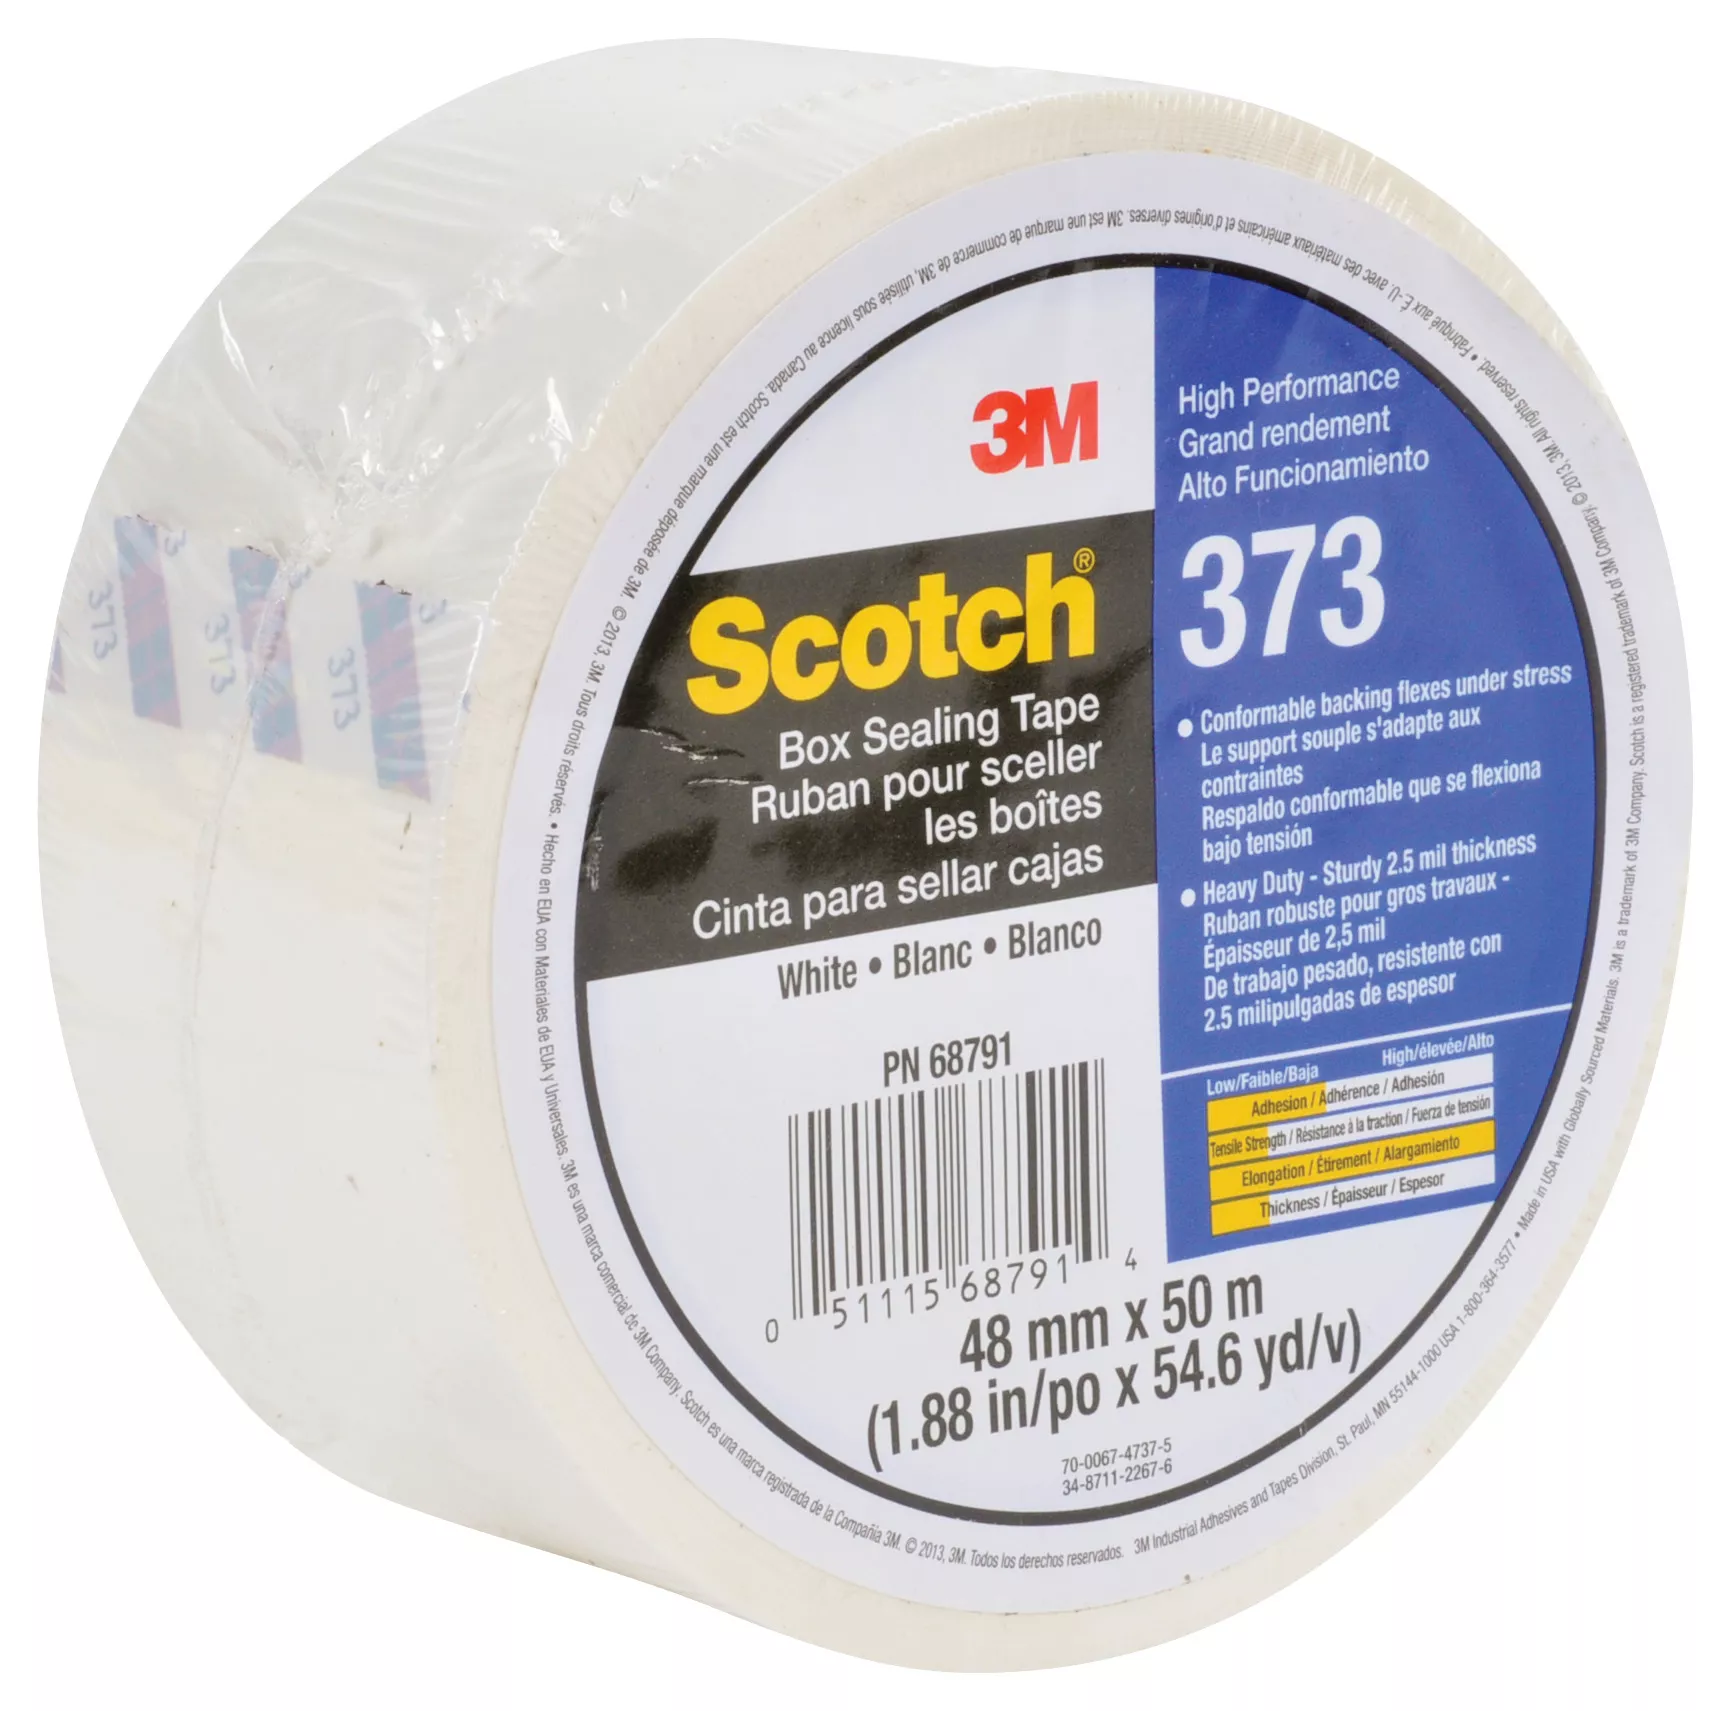 SKU 7010374968 | Scotch® Box Sealing Tape 373